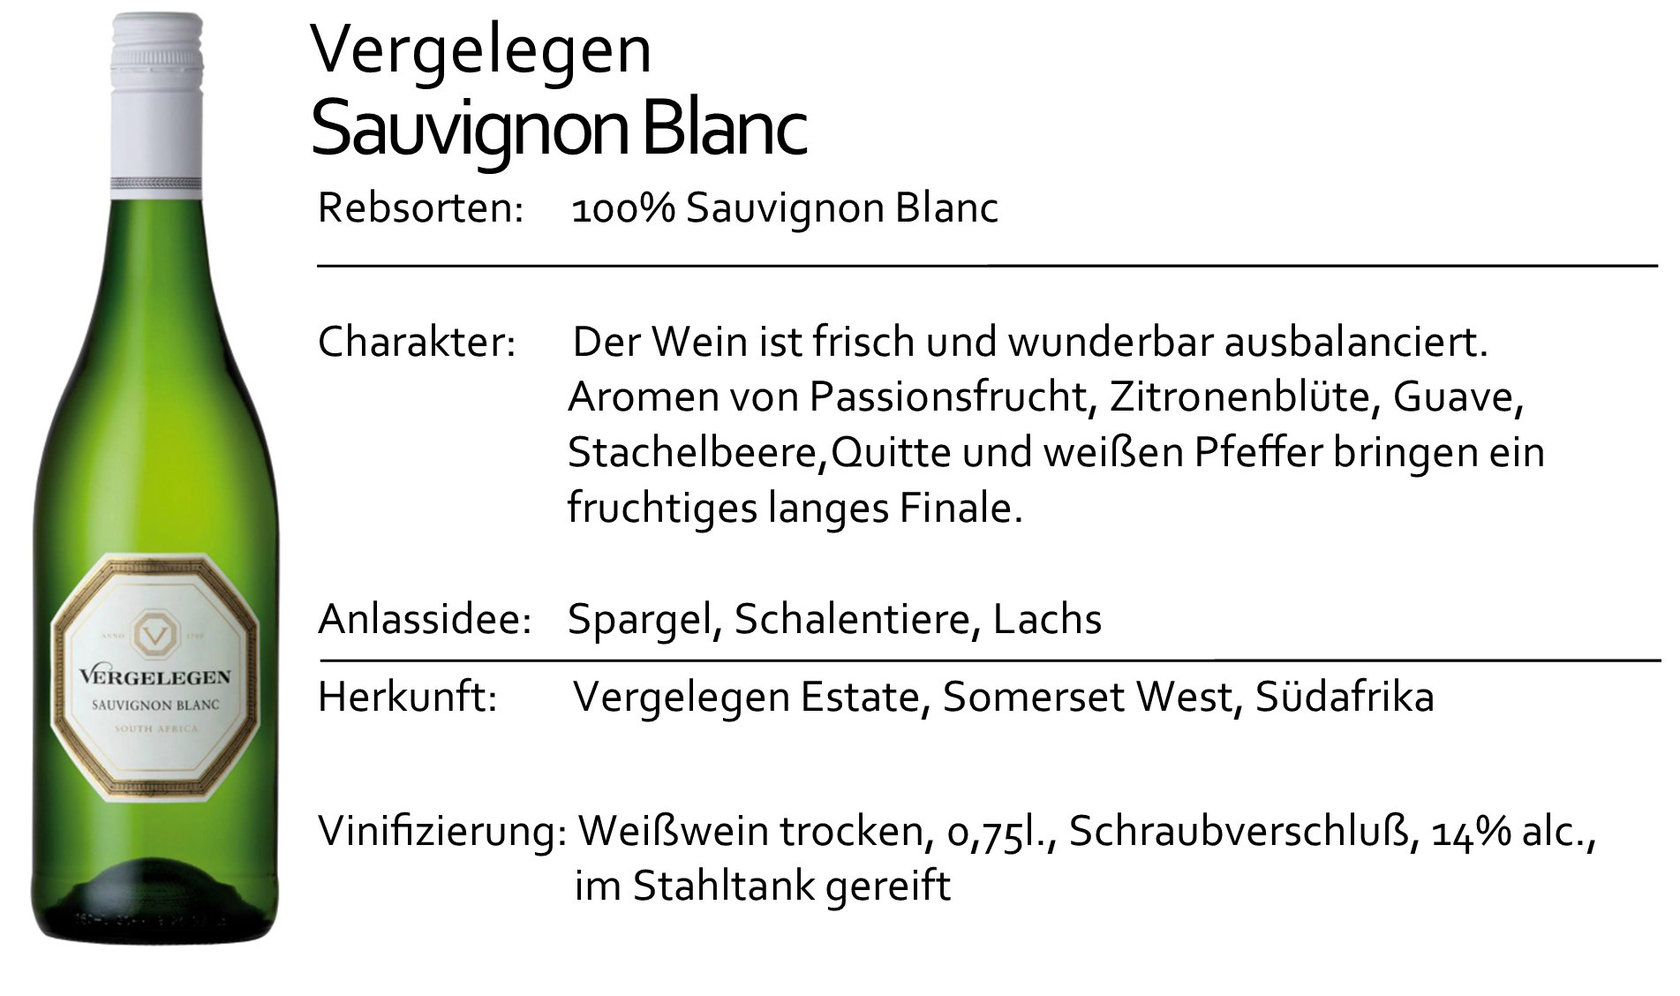 Vergelegen Sauvignon Blanc 2020